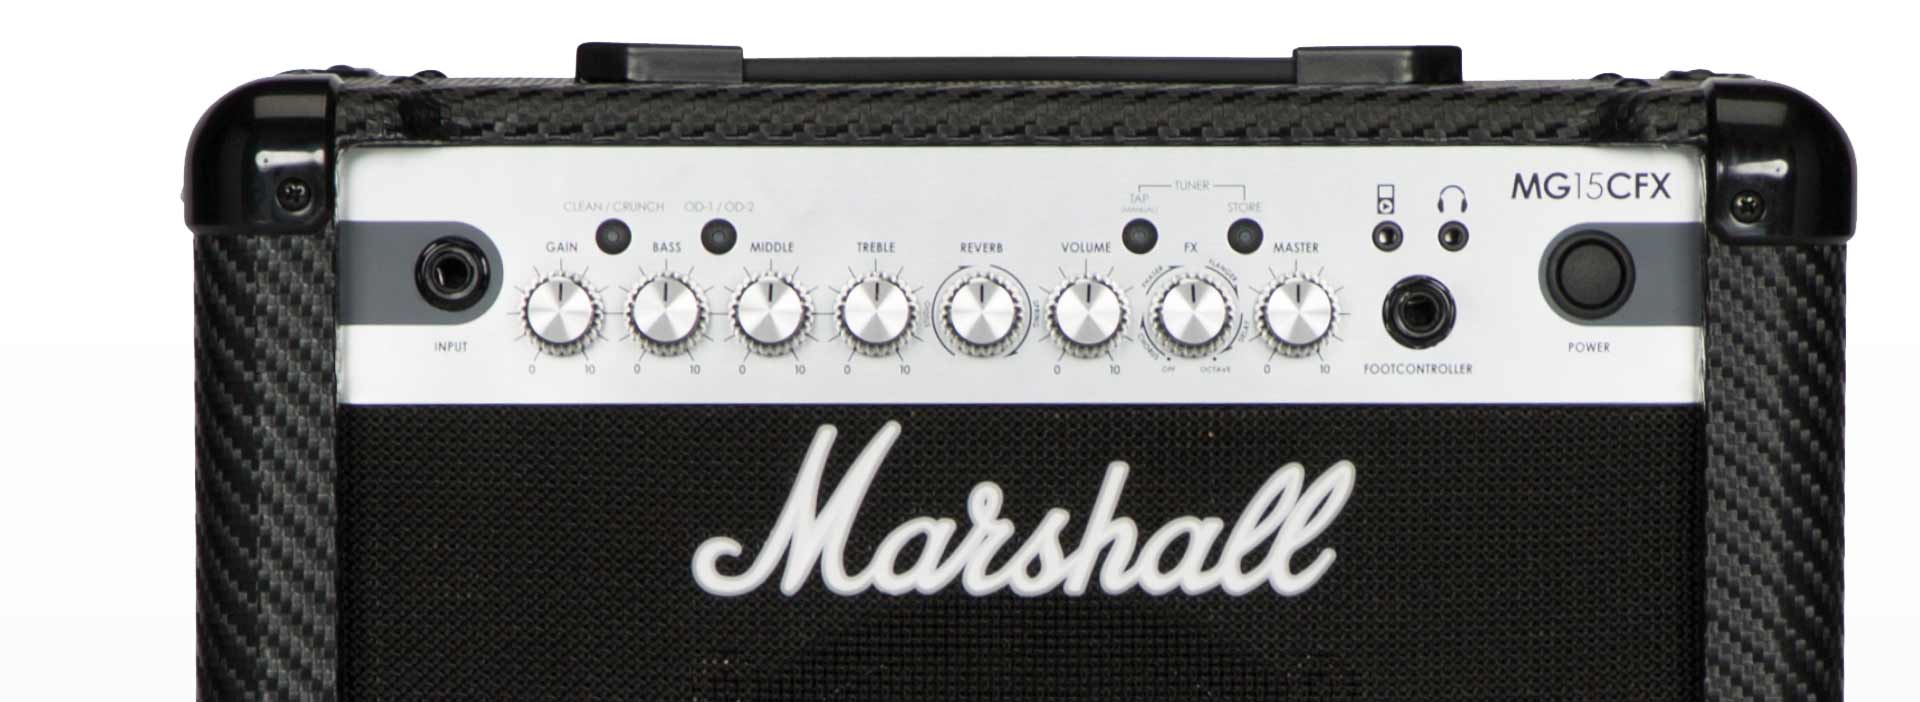 MARSHALL-AMP-MG15CFX-GUITARCITY